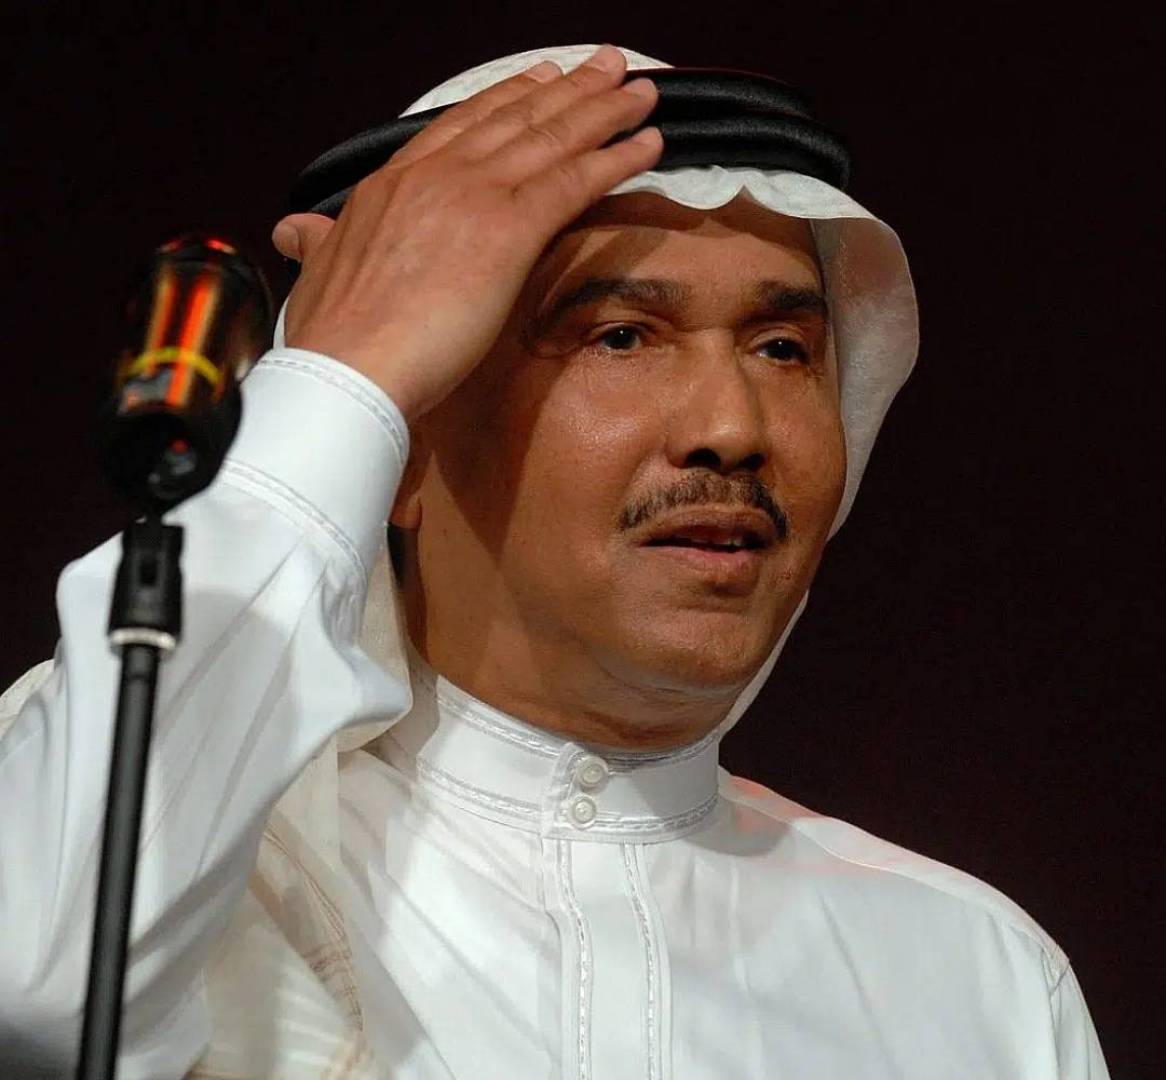 الفنان السعودي محمد عبده يكشف عن آخر أمنياته قبل الاعتزال..ما هي